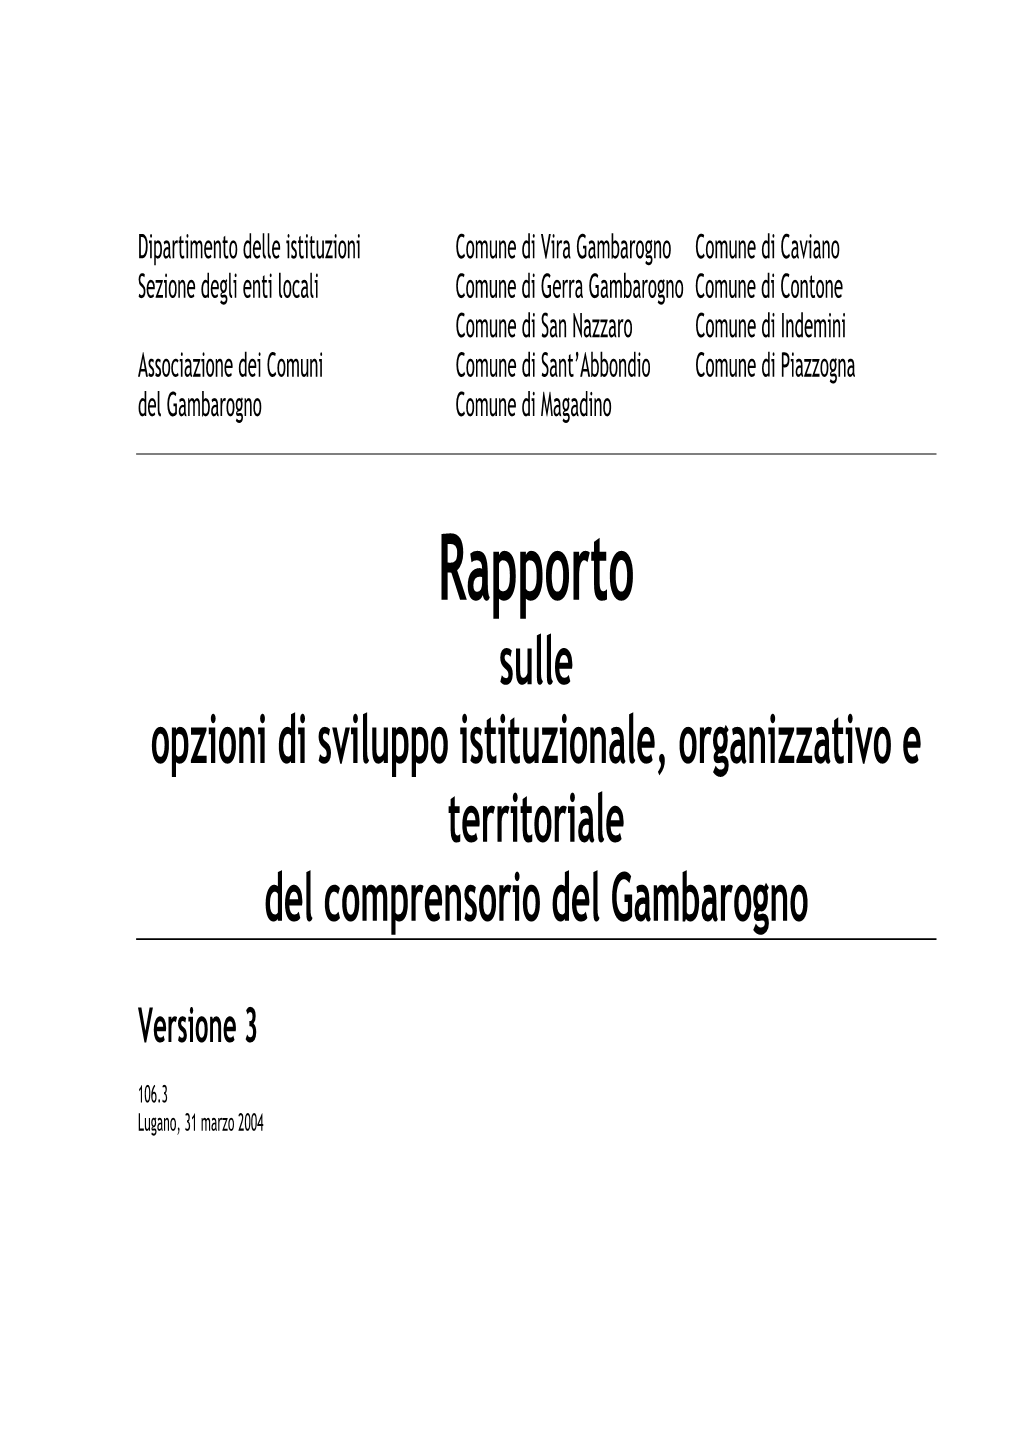 Rapporto Gambarogno